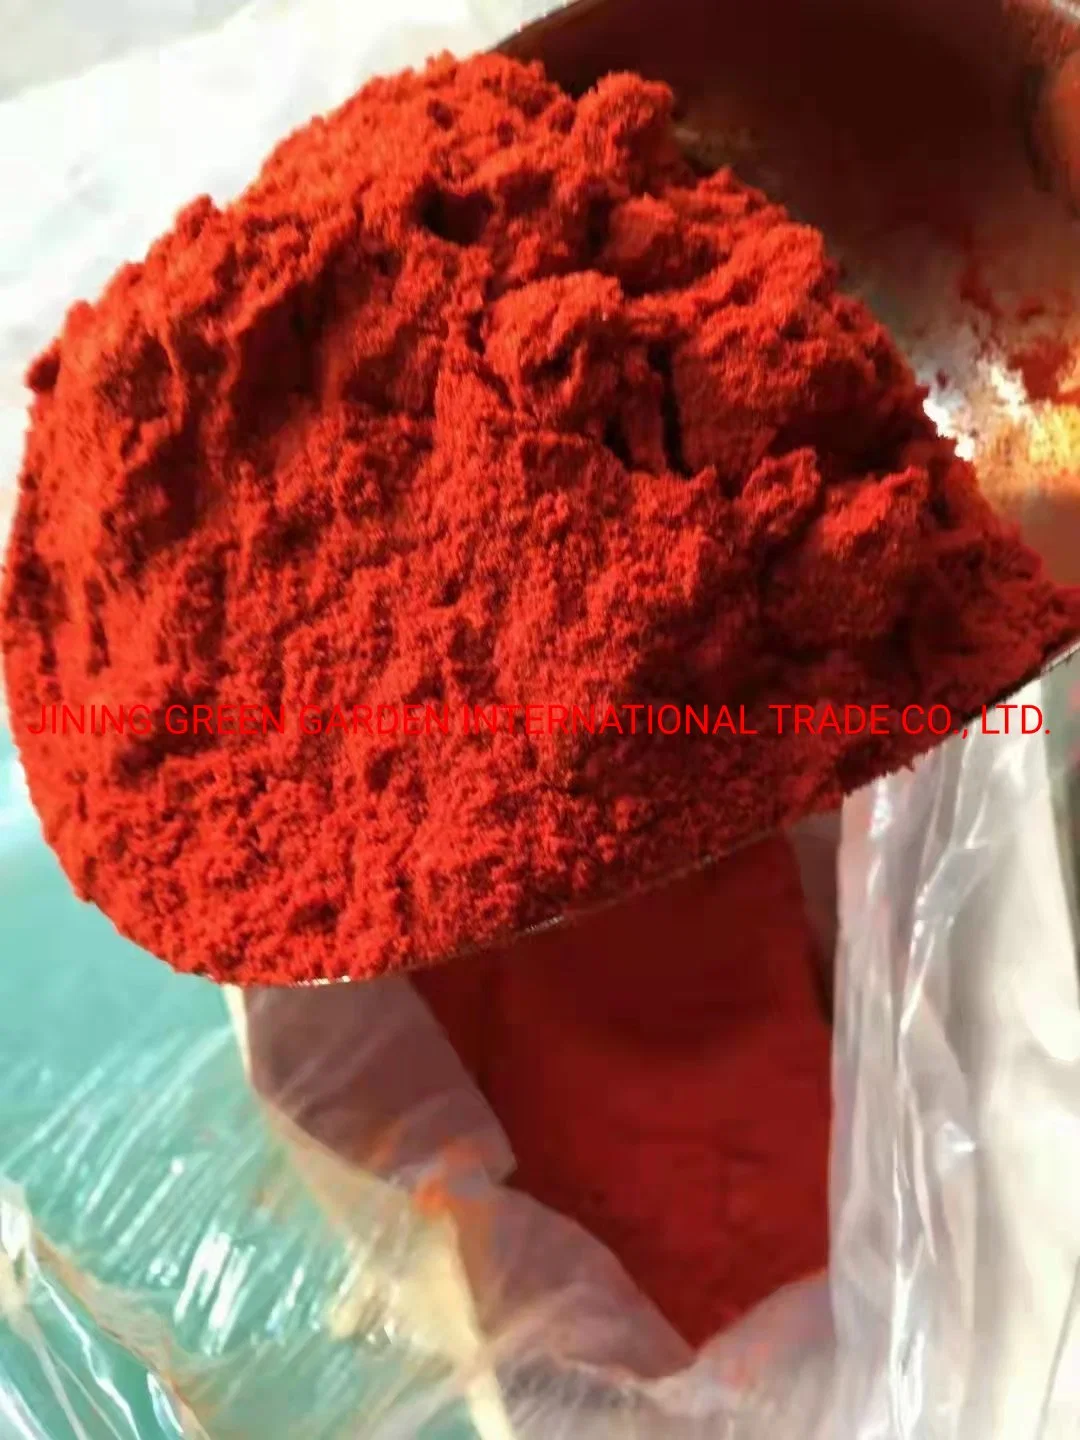 La meilleure qualité de la poudre de piment rouge piment en poudre rouge rouge piment en poudre fabriqué en Chine Seul Herbes et épices séchées HACCP brutes